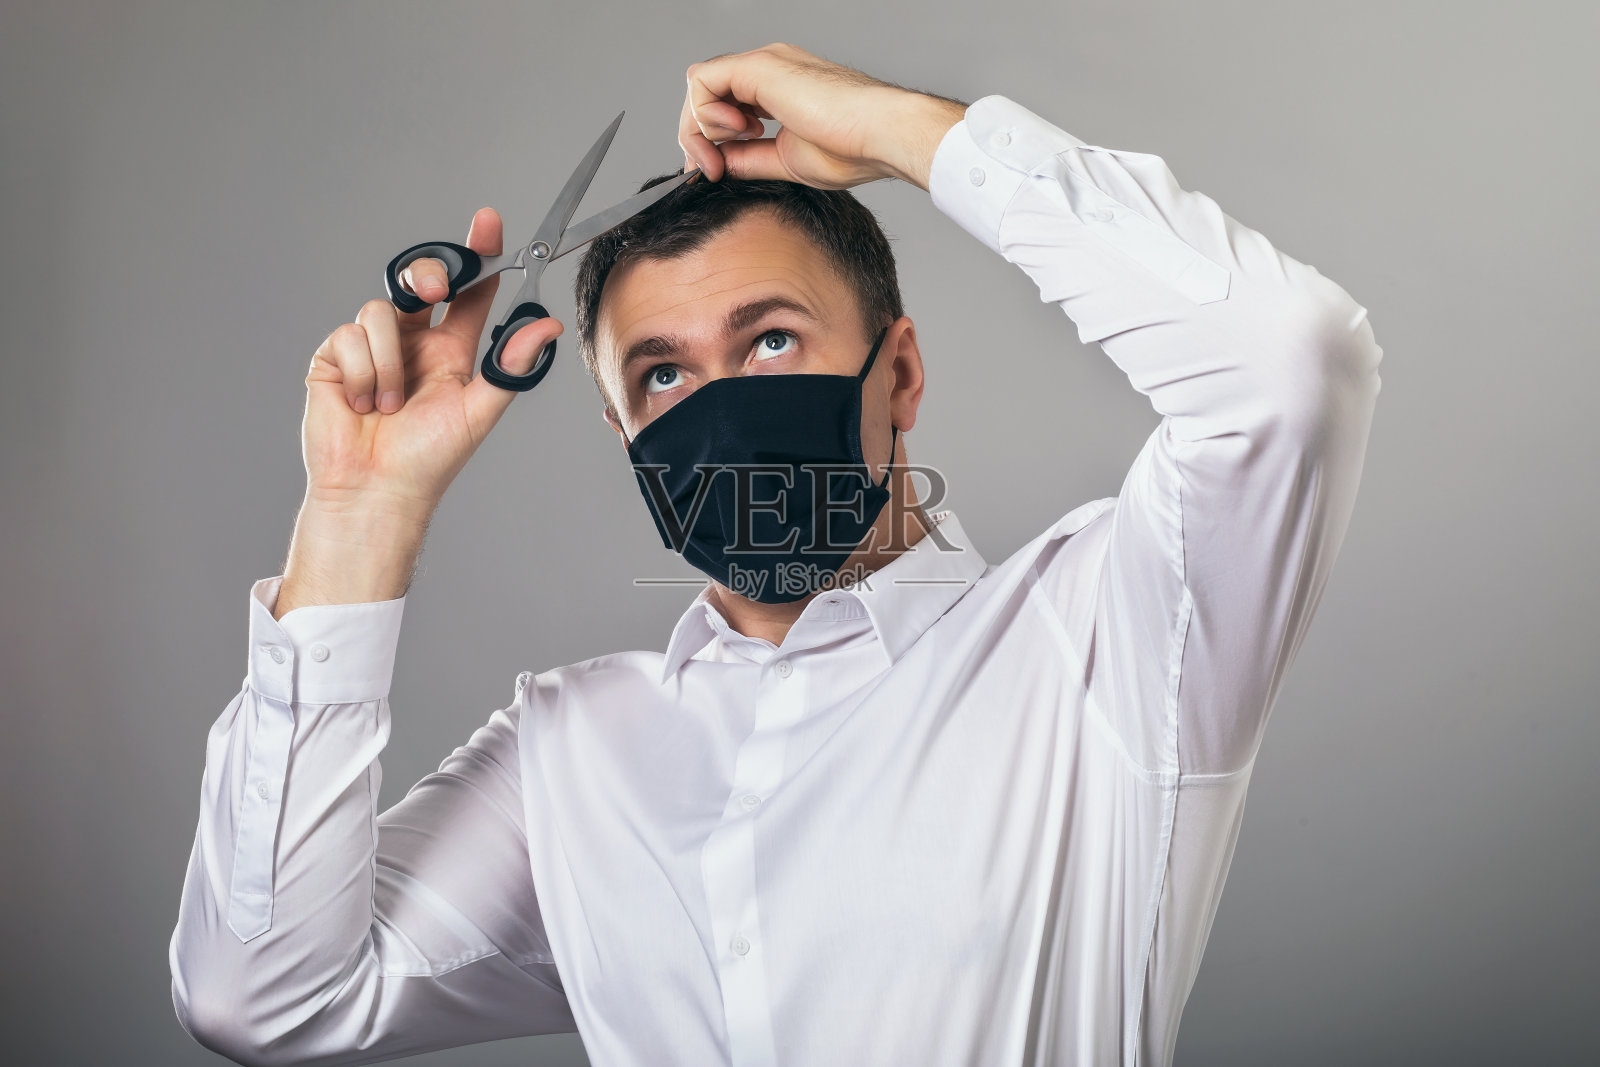 一名戴医用口罩的男子在居家隔离期间试图独立为自己提供美容服务。关于因新冠肺炎大流行关闭美容院主题的概念照片摄影图片